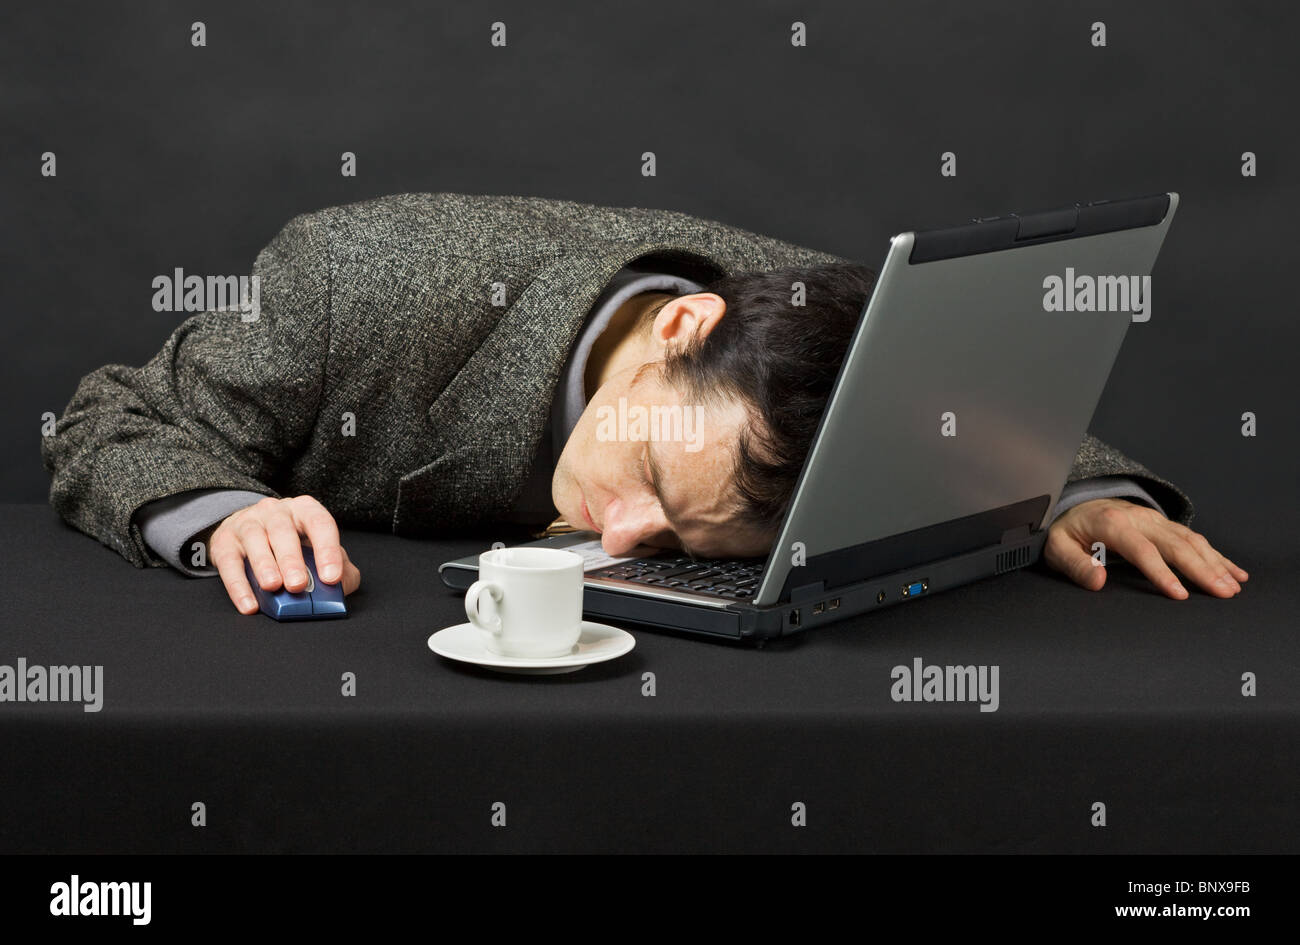 Мужчина постоянно устает. Человек перед компьютером. Заснул за компьютером. Спящий человек за компьютером.